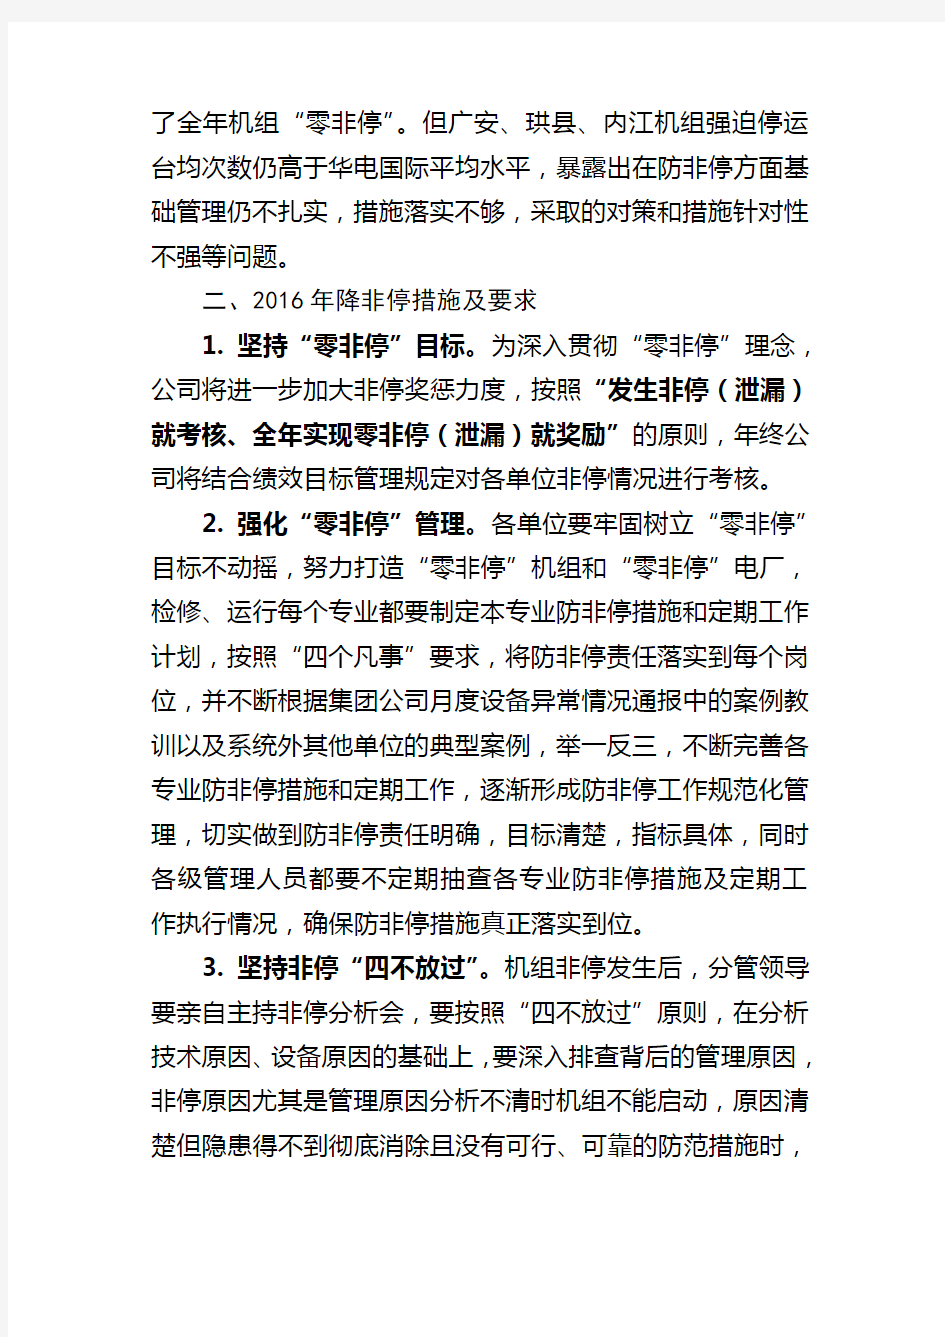 华电国际电力股份有限公司四川分公司火电机组“降非停”工作方案